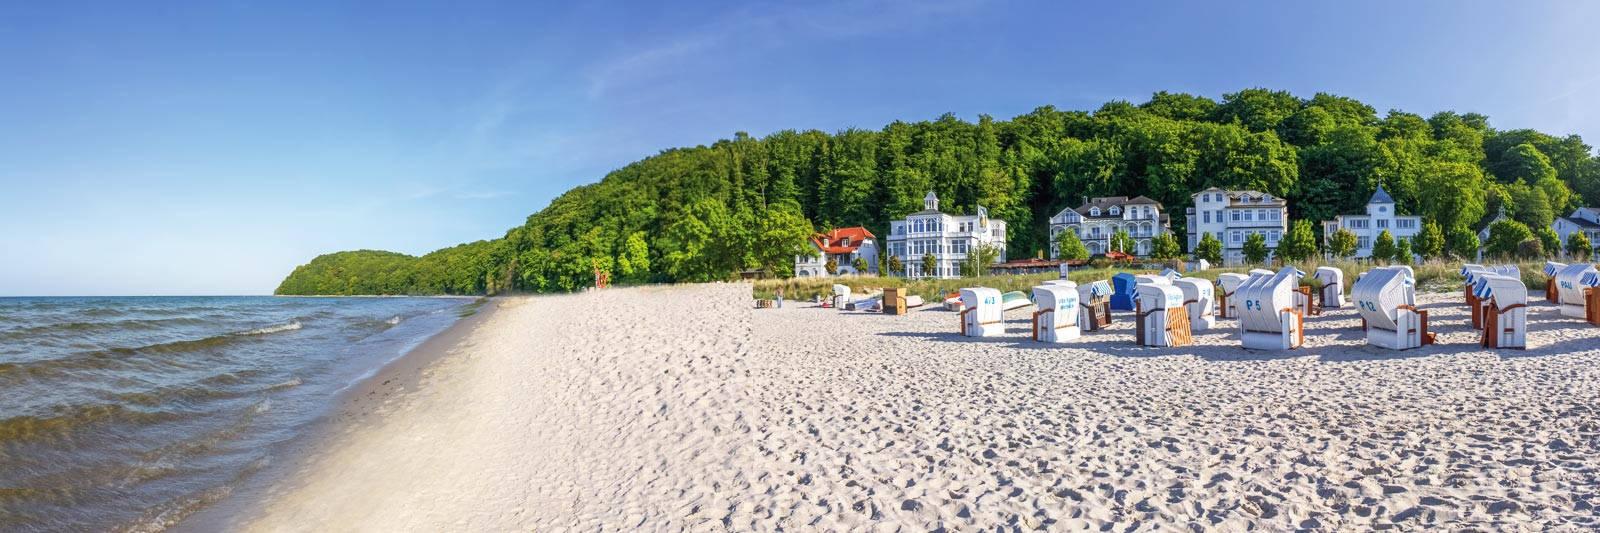 15 Ferienwohnungen und Ferienhäuser in Hoppenrade - tourist-online.de